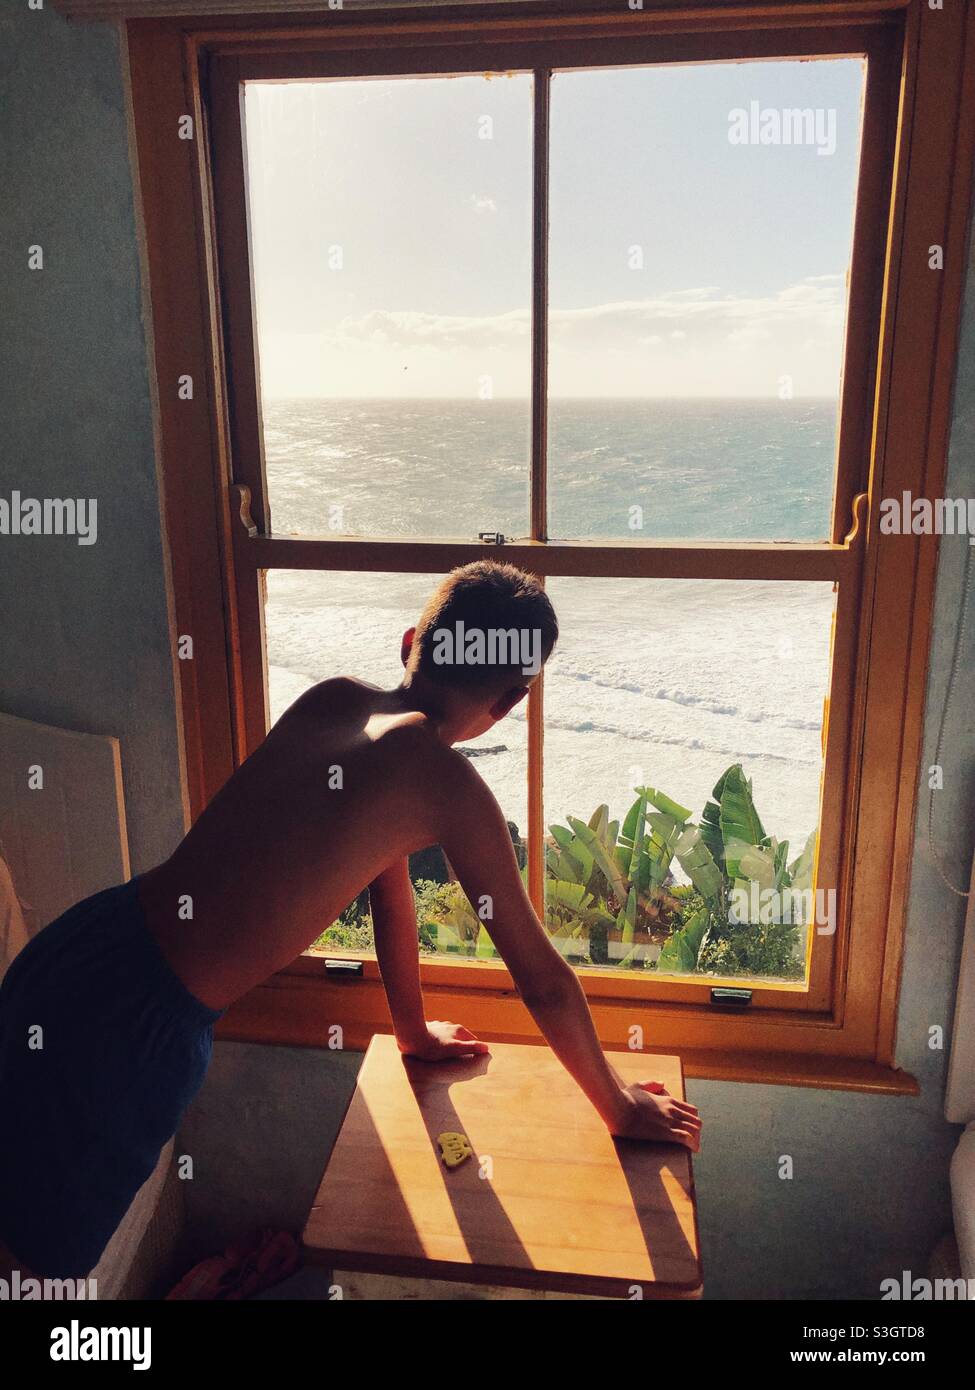 Un jeune garçon qui regarde par la fenêtre au soleil se lève sur l'océan Indien Banque D'Images